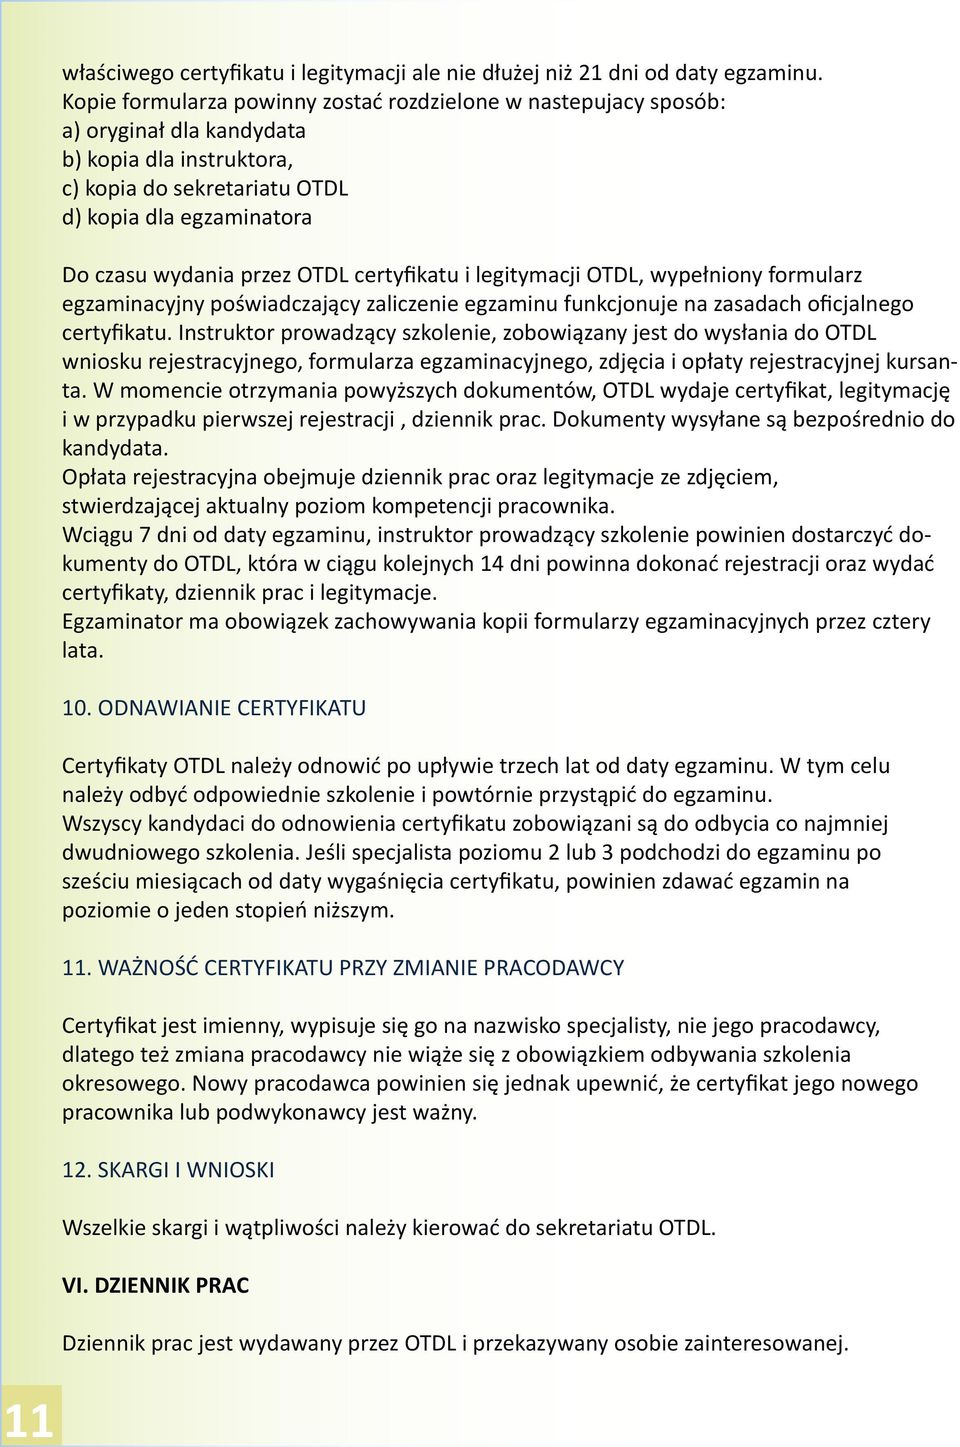 OTDL certyfikatu i legitymacji OTDL, wypełniony formularz egzaminacyjny poświadczający zaliczenie egzaminu funkcjonuje na zasadach oficjalnego certyfikatu.